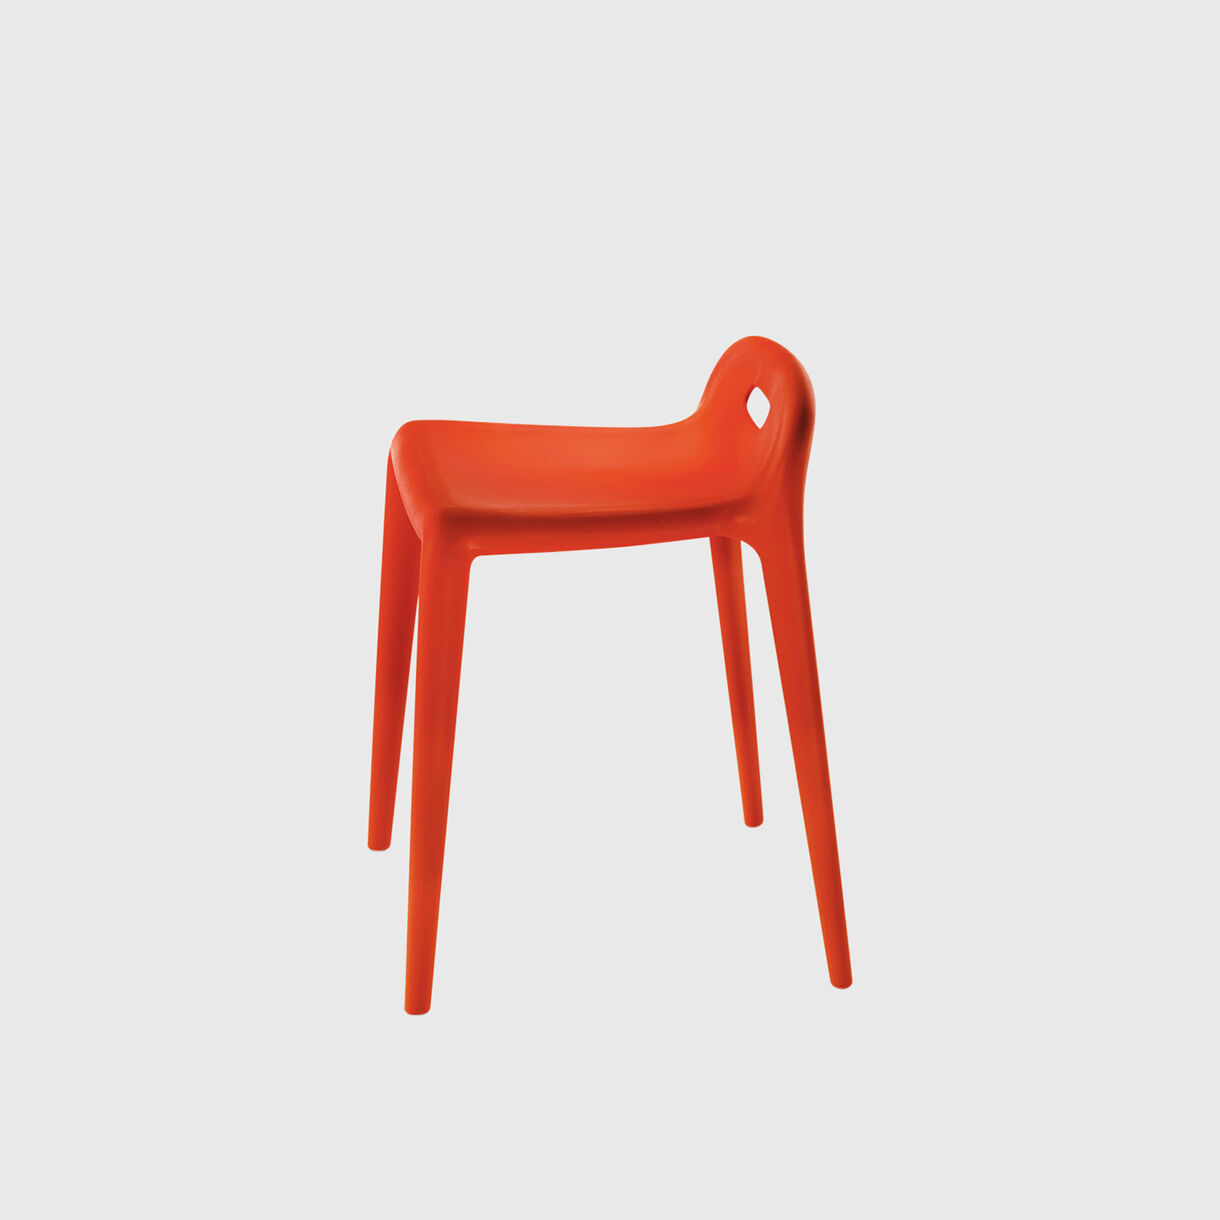 Yuyu stool, orange